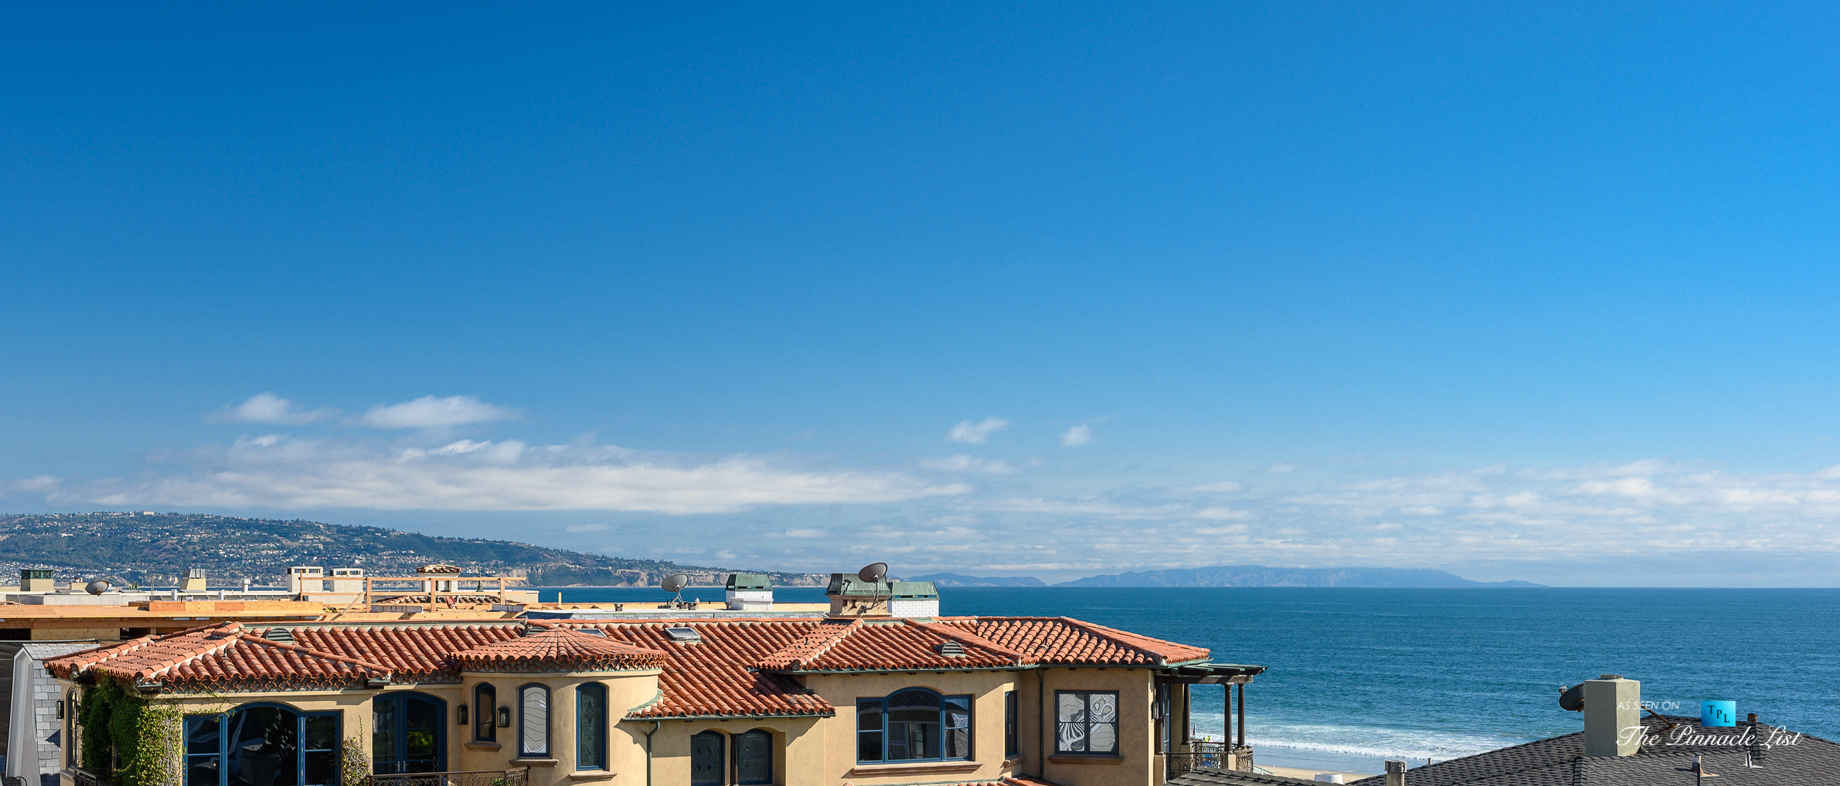 2016 Ocean Dr, Manhattan Beach, CA, USA – Ocean View – Luxury Real Estate – Modern Ocean View Home